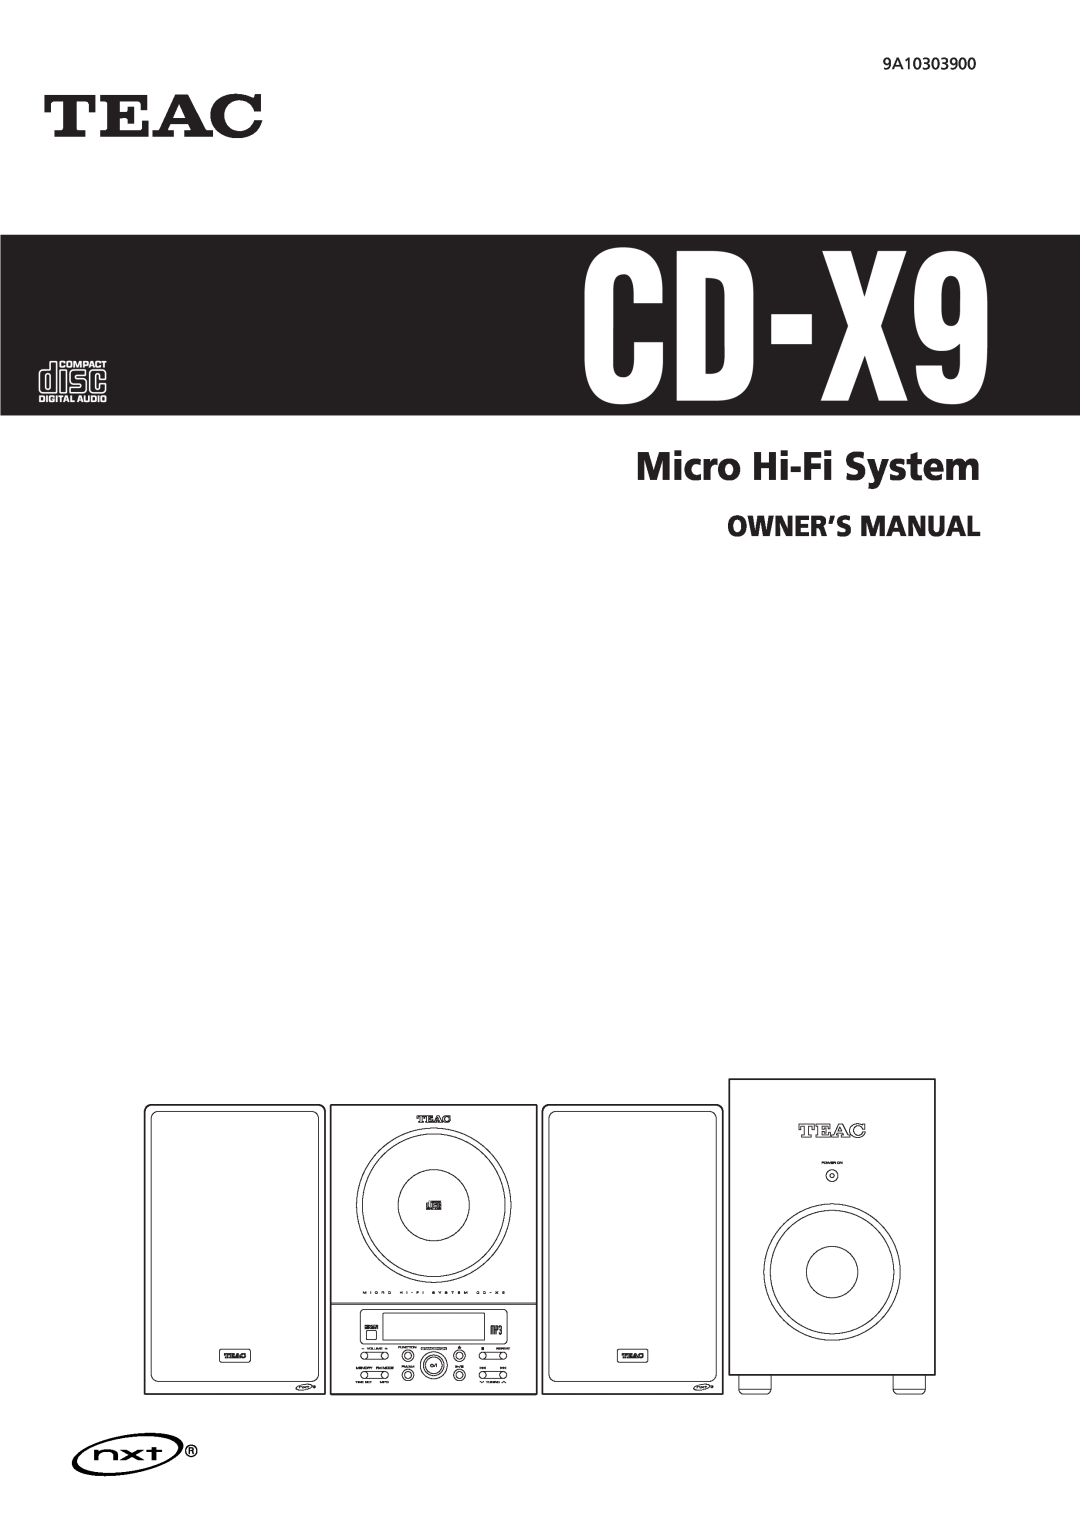 Teac CD-X9 owner manual Micro Hi-FiSystem 